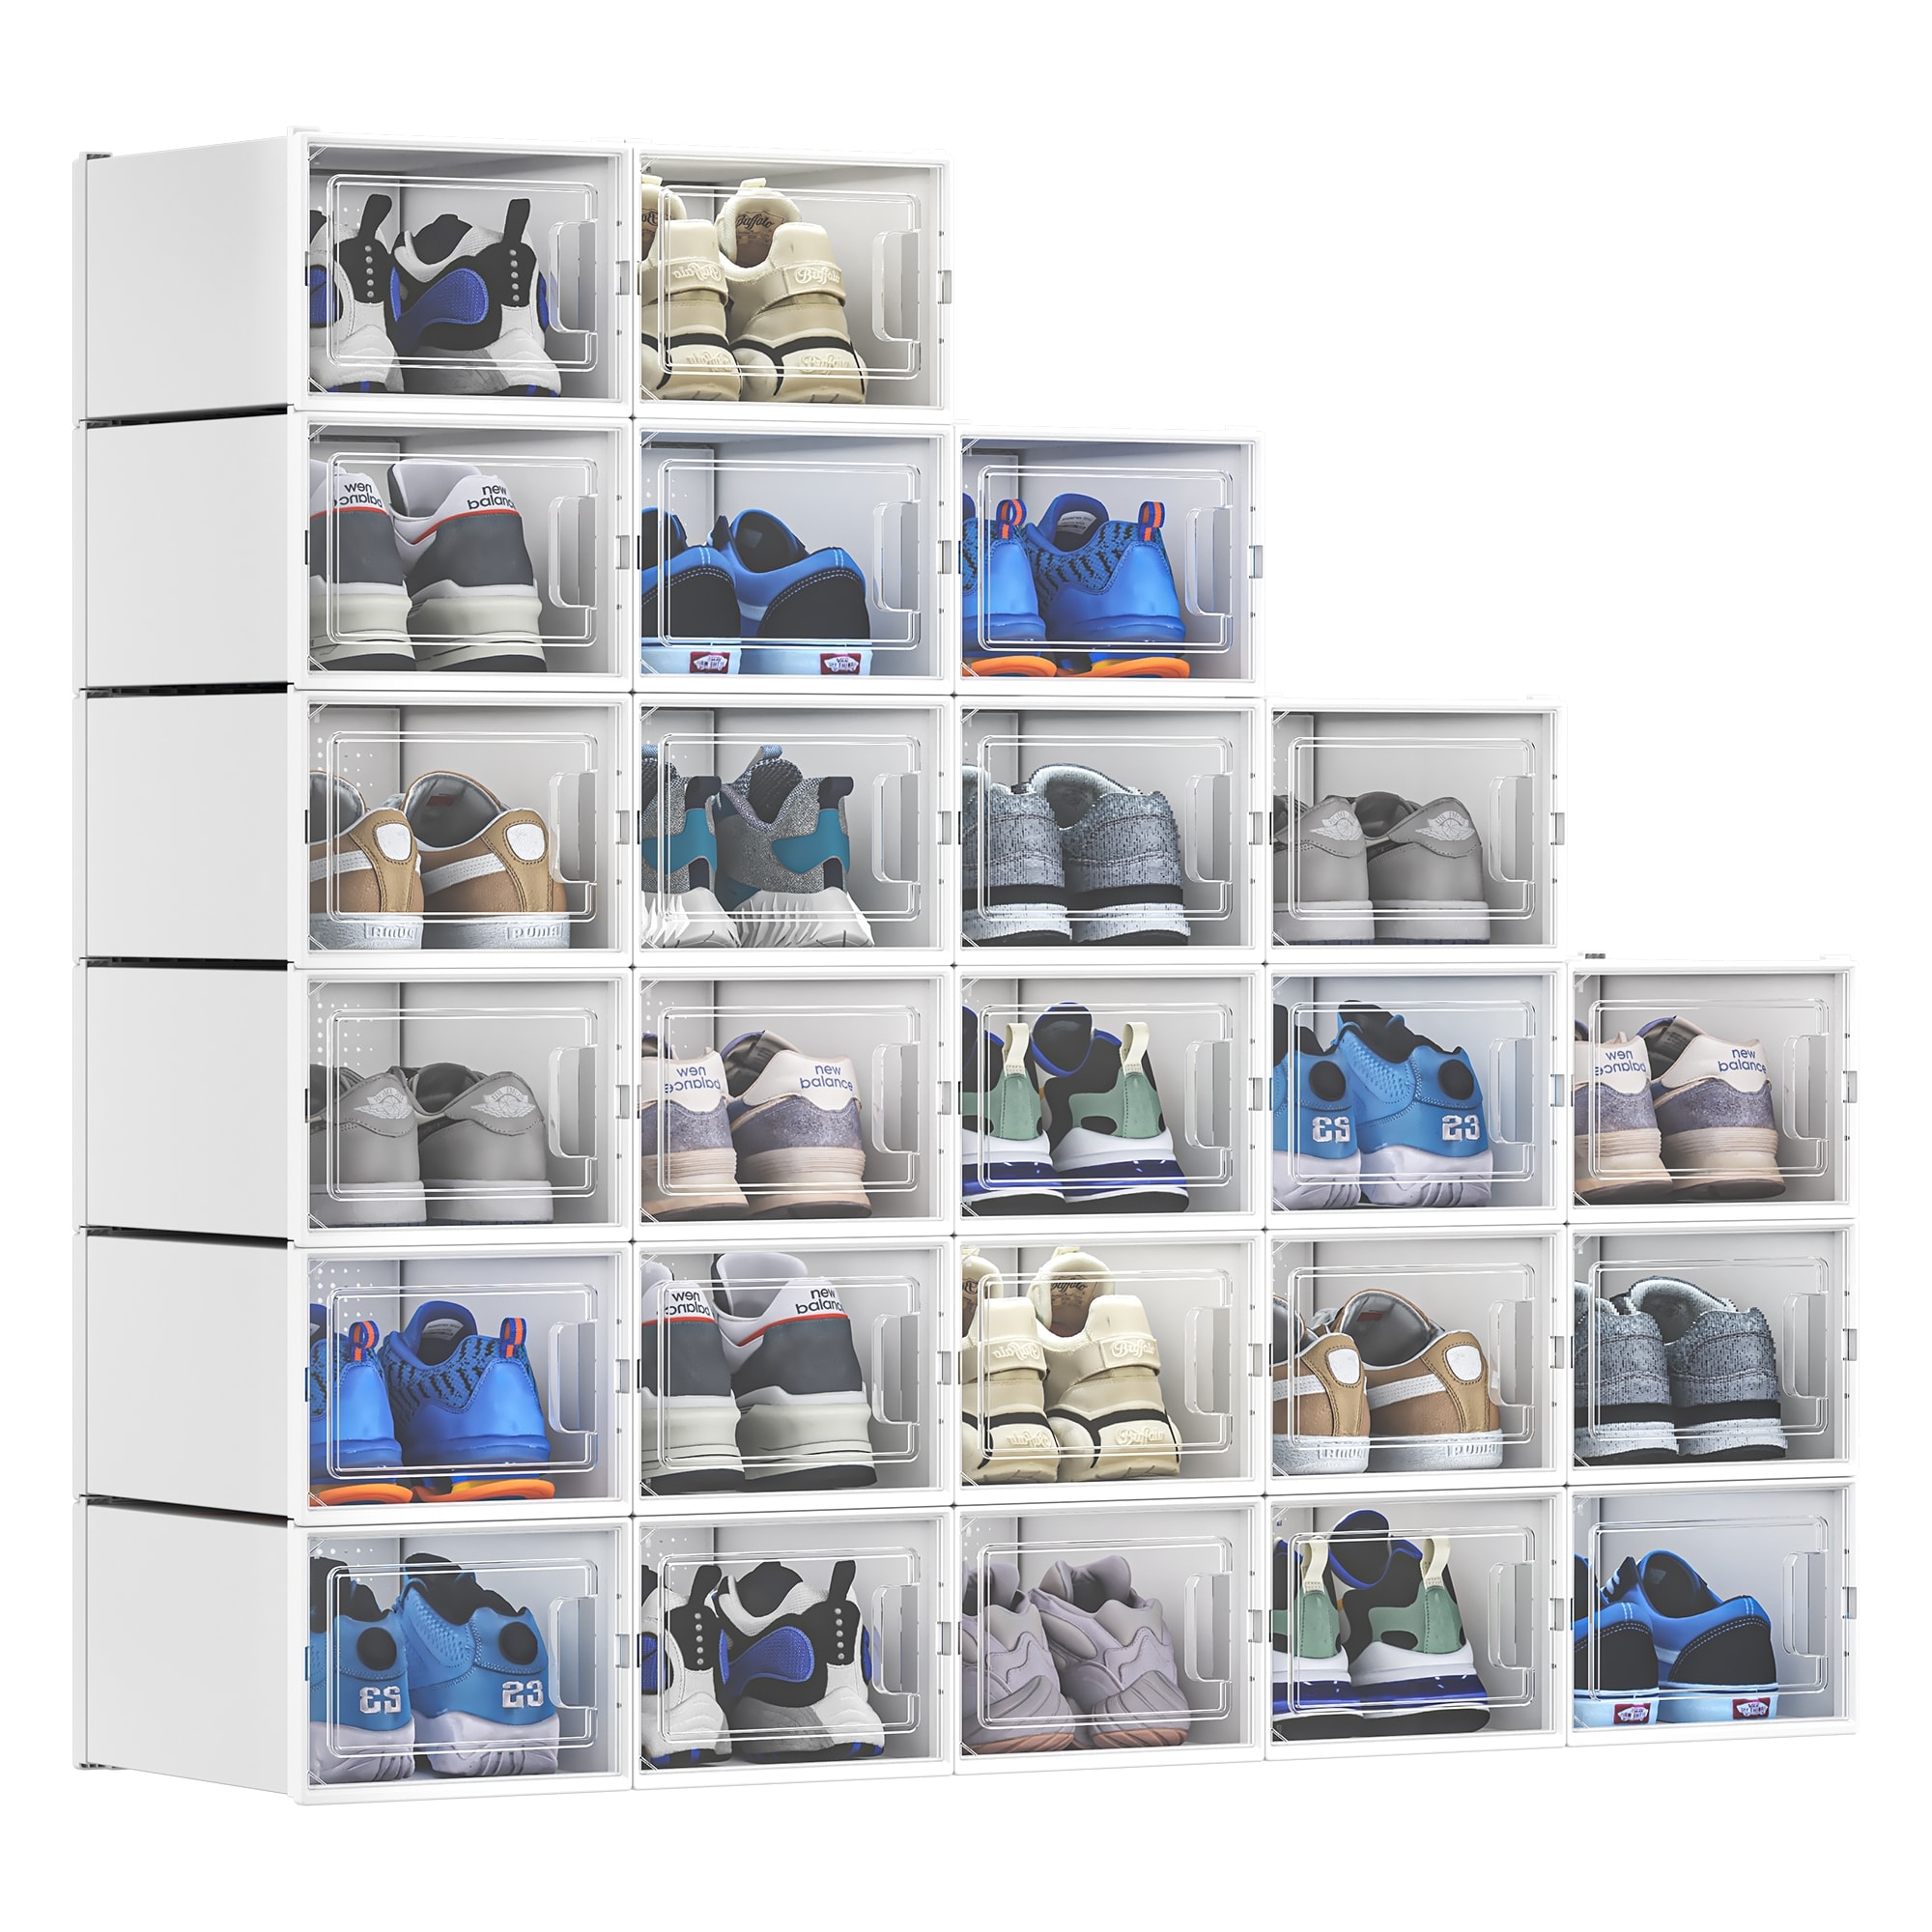 https://ak1.ostkcdn.com/images/products/is/images/direct/817243c8929c03bcd9576690fc3d7bce12459b44/Moasis-24-pcs-Plastic-Shoe-Box-Set.jpg